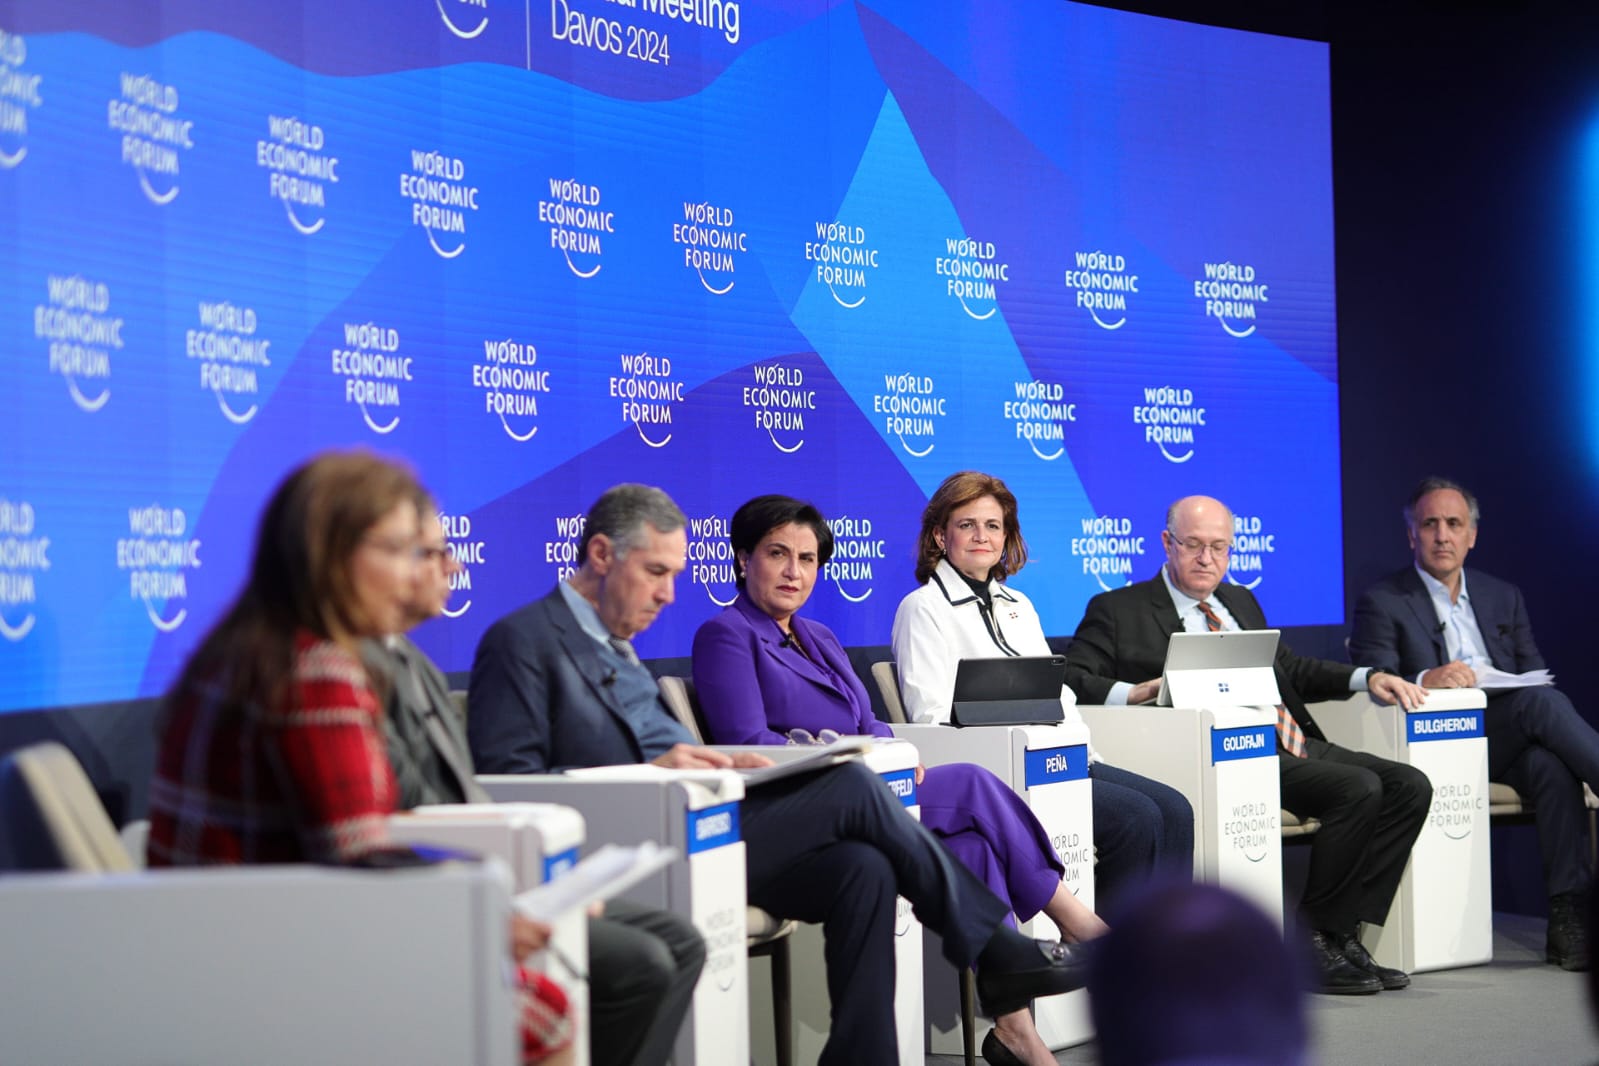 Vicepresidenta afirma en Davos que la implementación de políticas transparentes en RD ha permitido garantizar la estabilidad económica y social para atraer inversiones